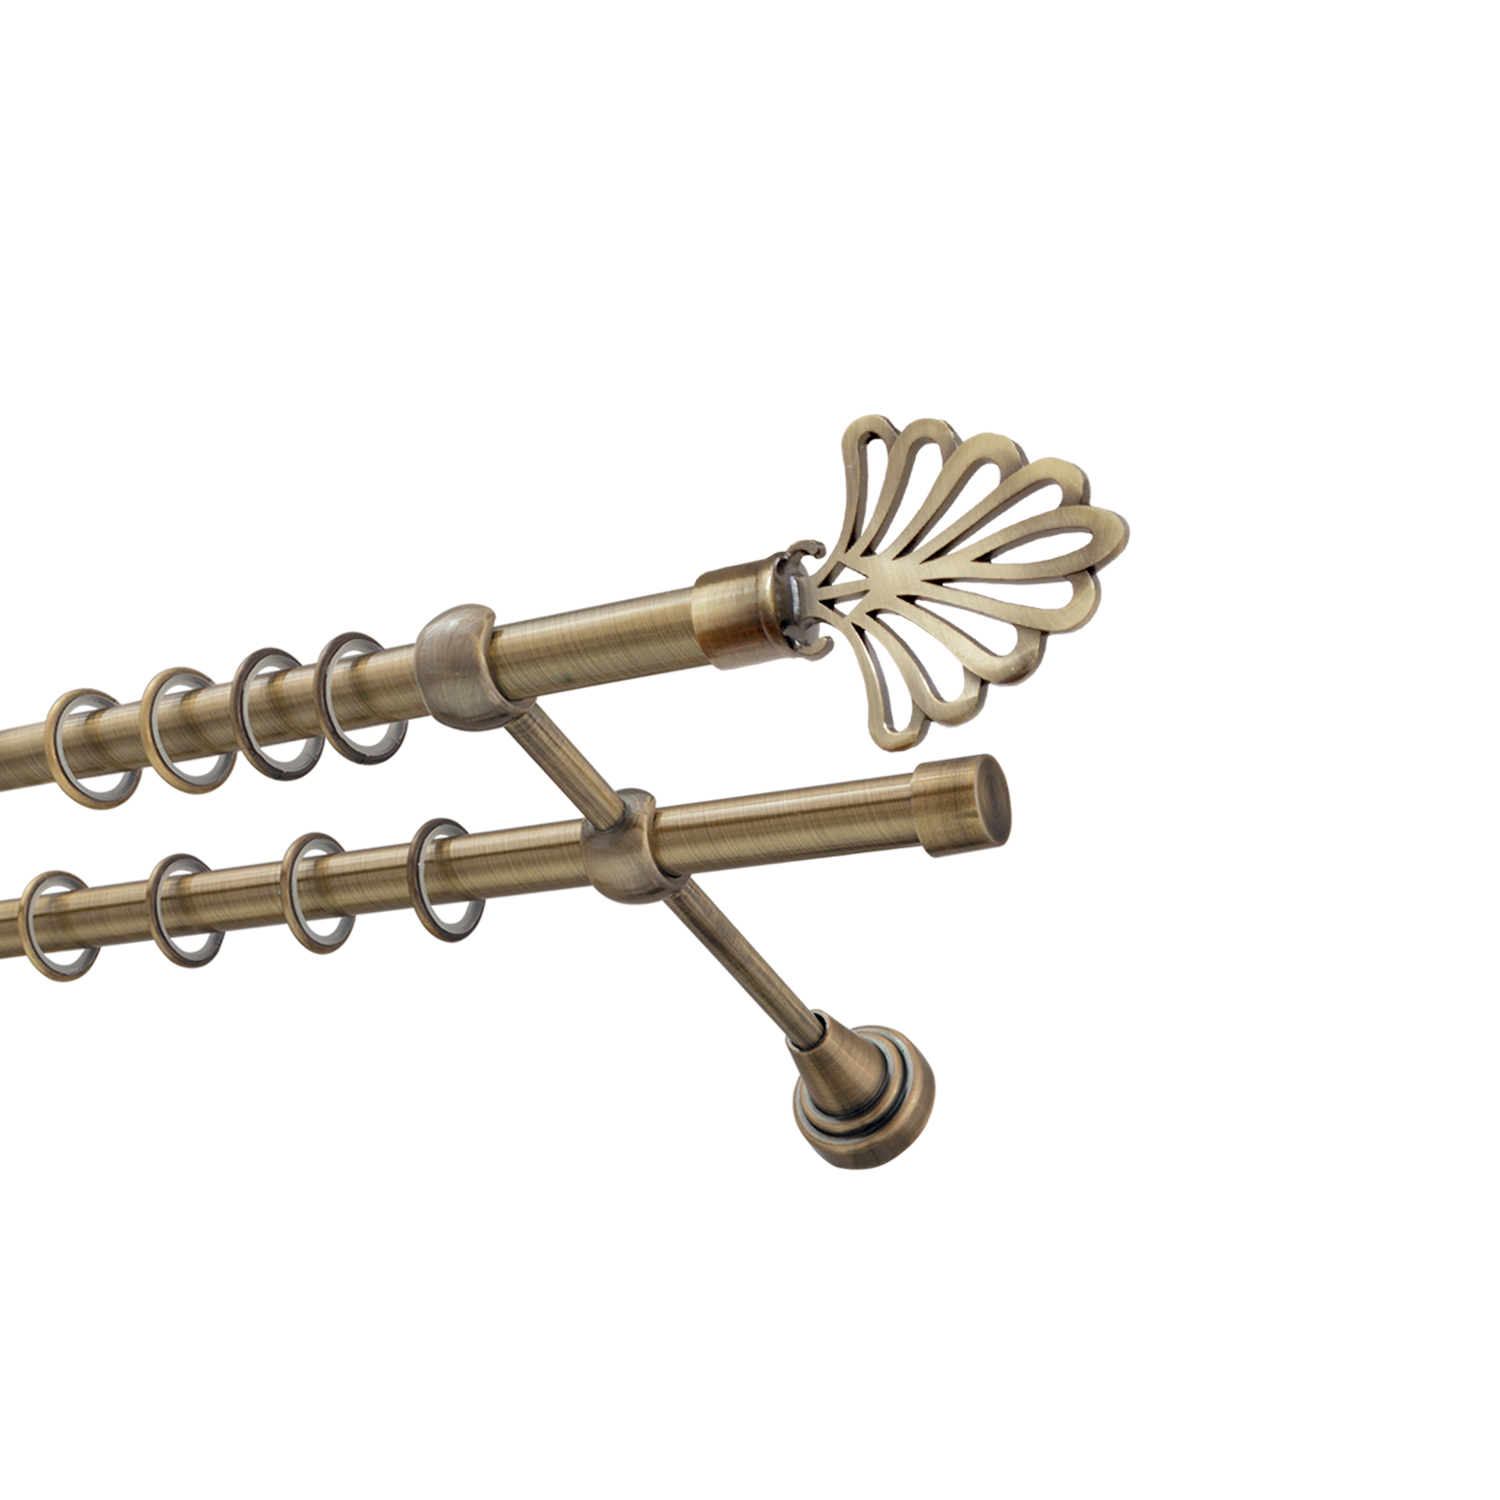 Металлический карниз для штор Бутик, двухрядный 16/16 мм, бронза, гладкая штанга, длина 140 см - фото Wikidecor.ru